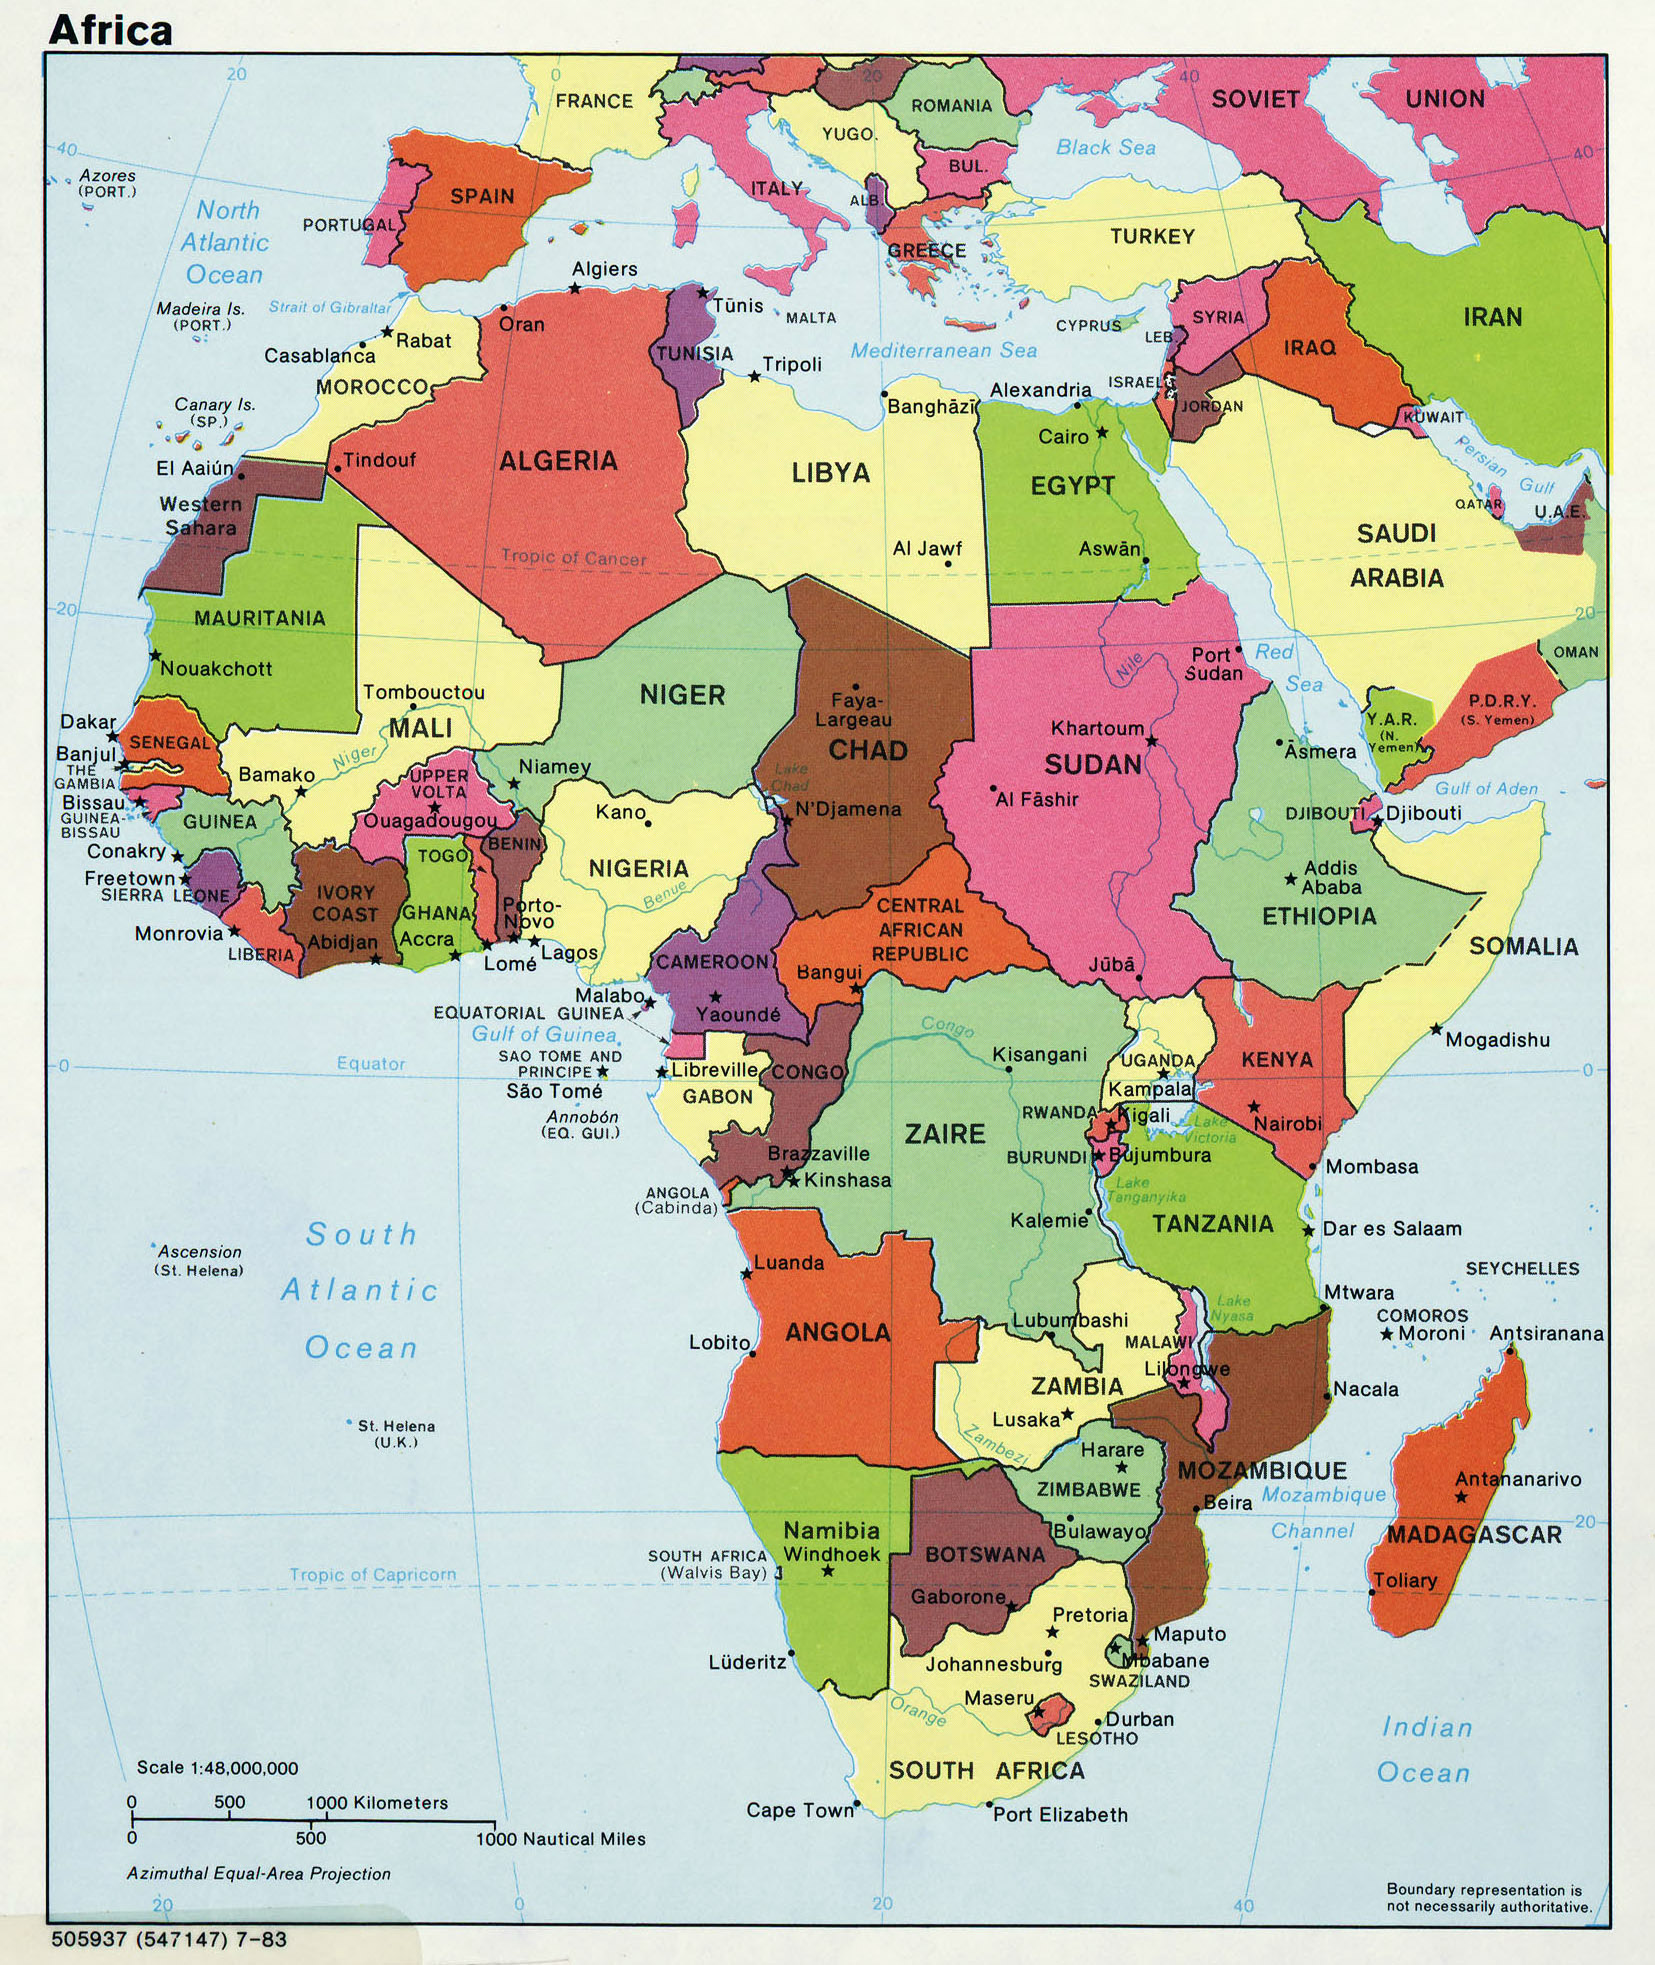 Mapa Politico De Africa Mapa De Paises Y Ciudades De Africa National Images 6094